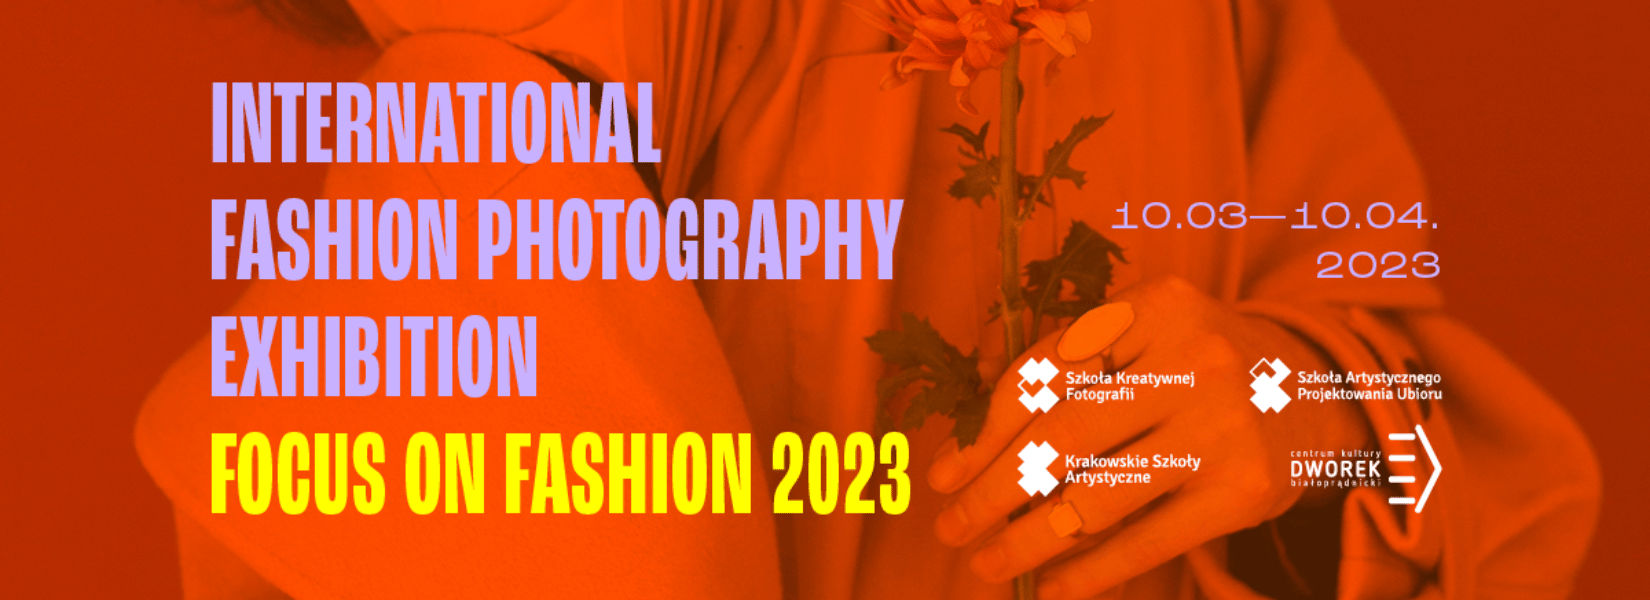 FOCUS ON FASHION | Międzynarodowa wystawa fotografii mody